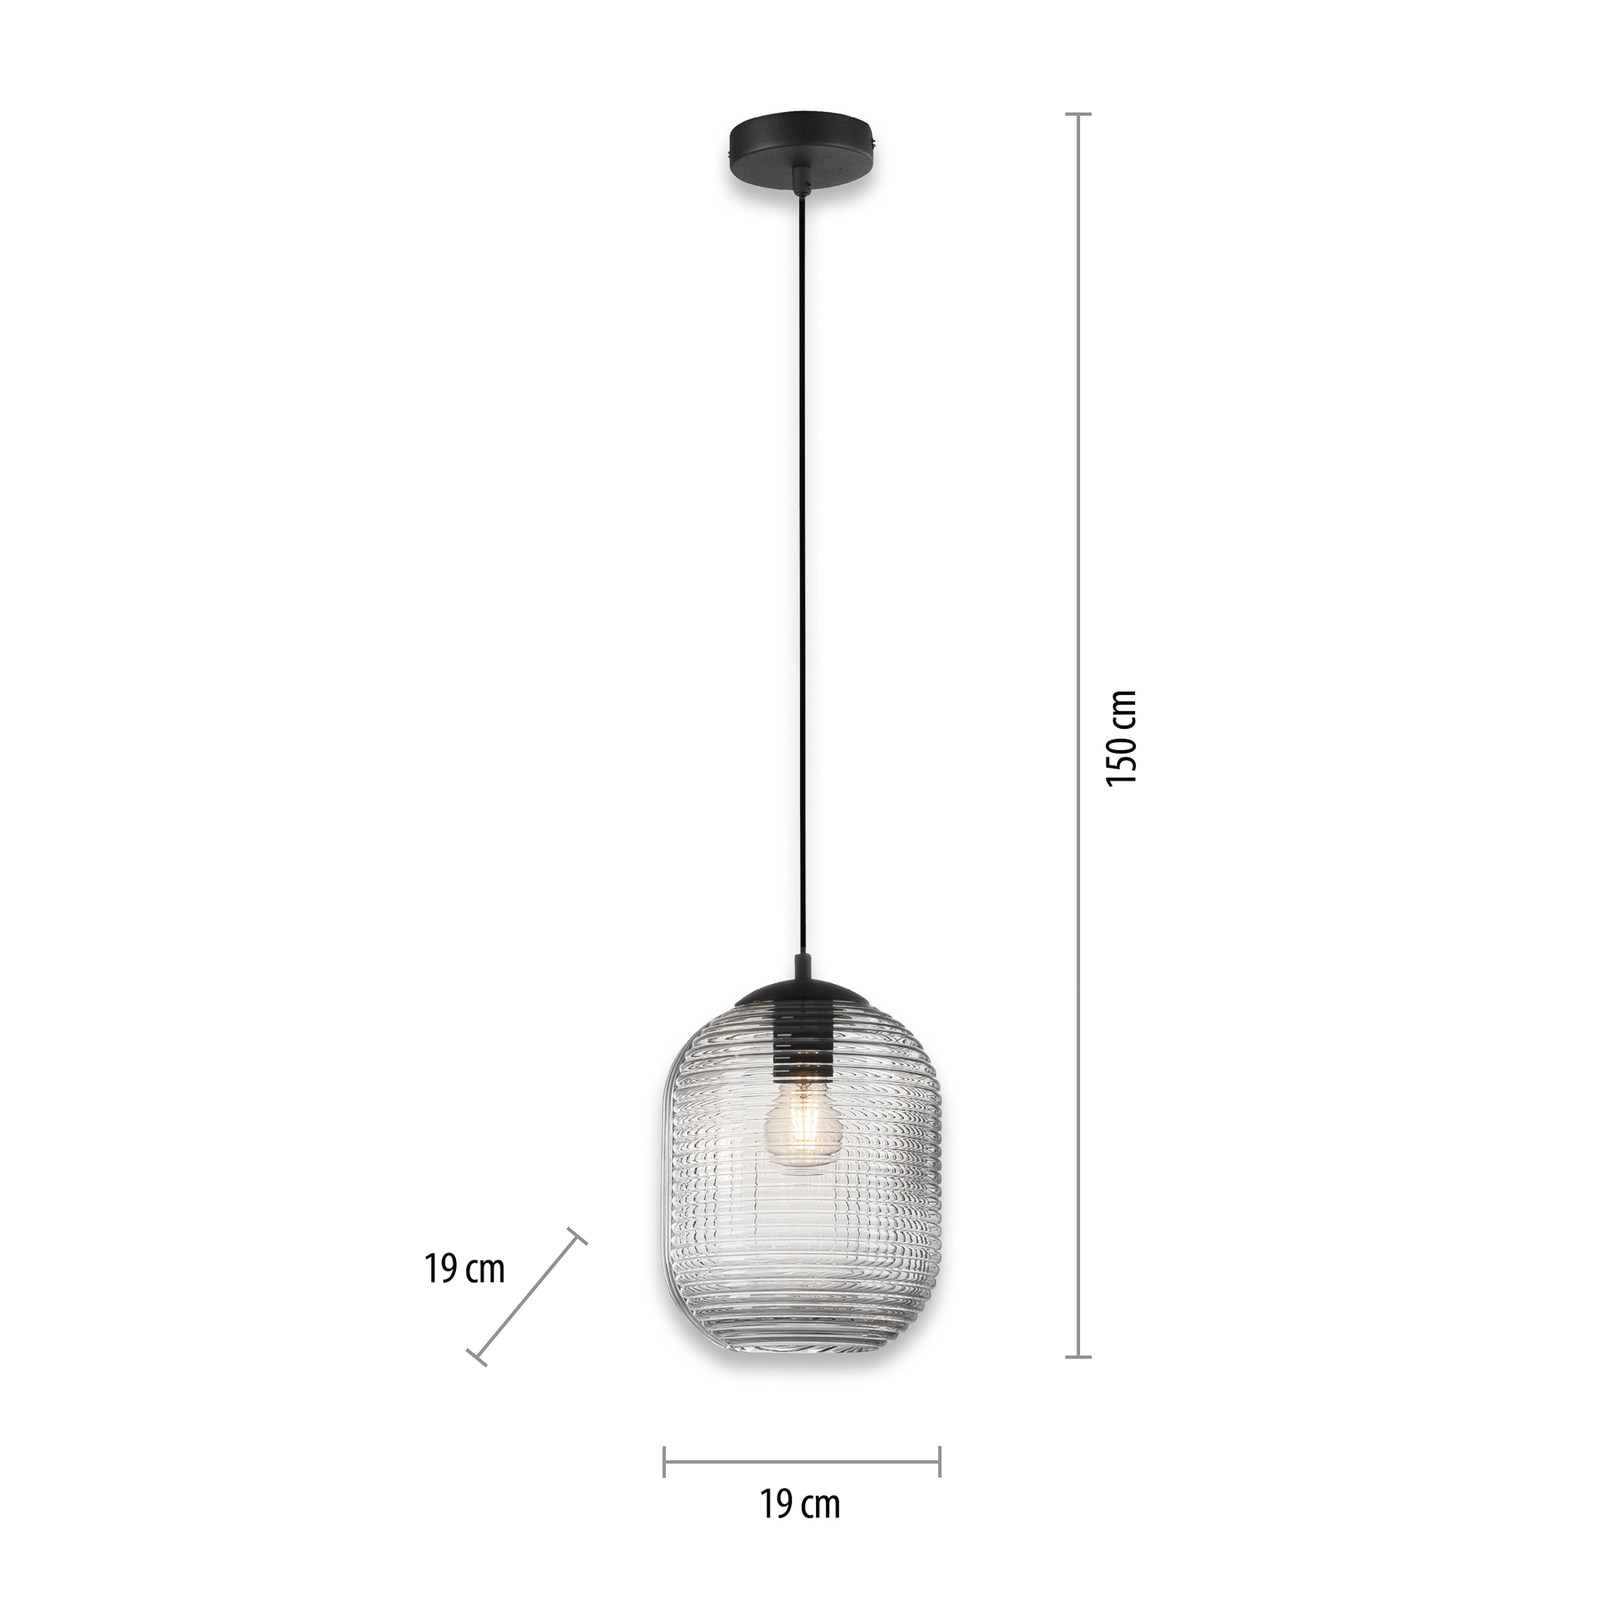 Shitake pendant light, one-bulb, smoky grey